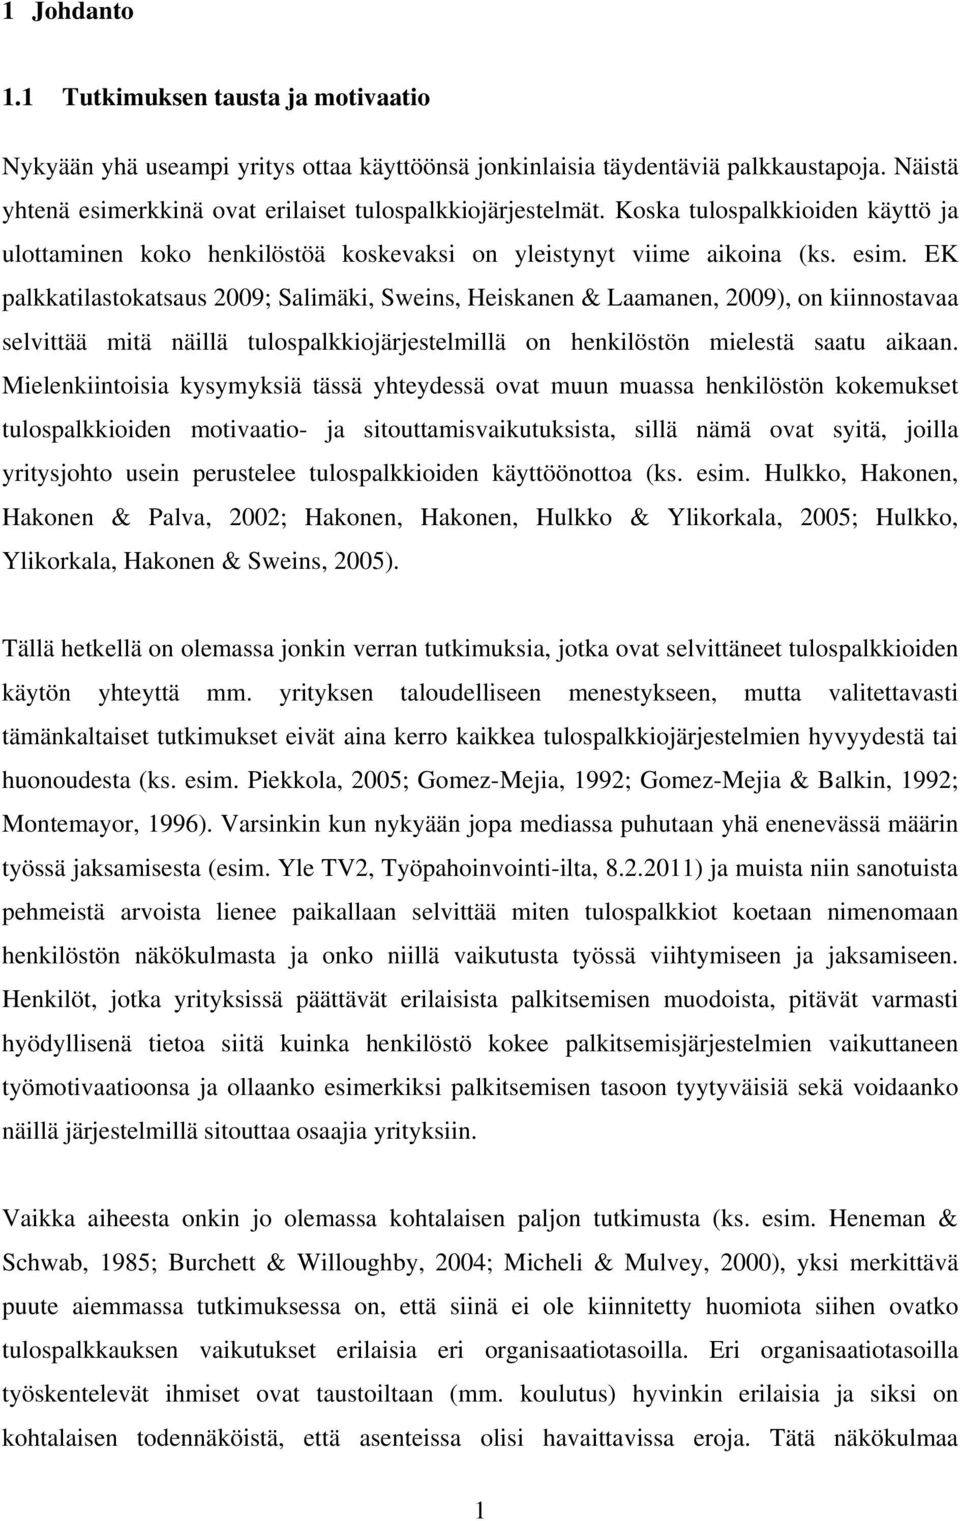 EK palkkatilastokatsaus 2009; Salimäki, Sweins, Heiskanen & Laamanen, 2009), on kiinnostavaa selvittää mitä näillä tulospalkkiojärjestelmillä on henkilöstön mielestä saatu aikaan.